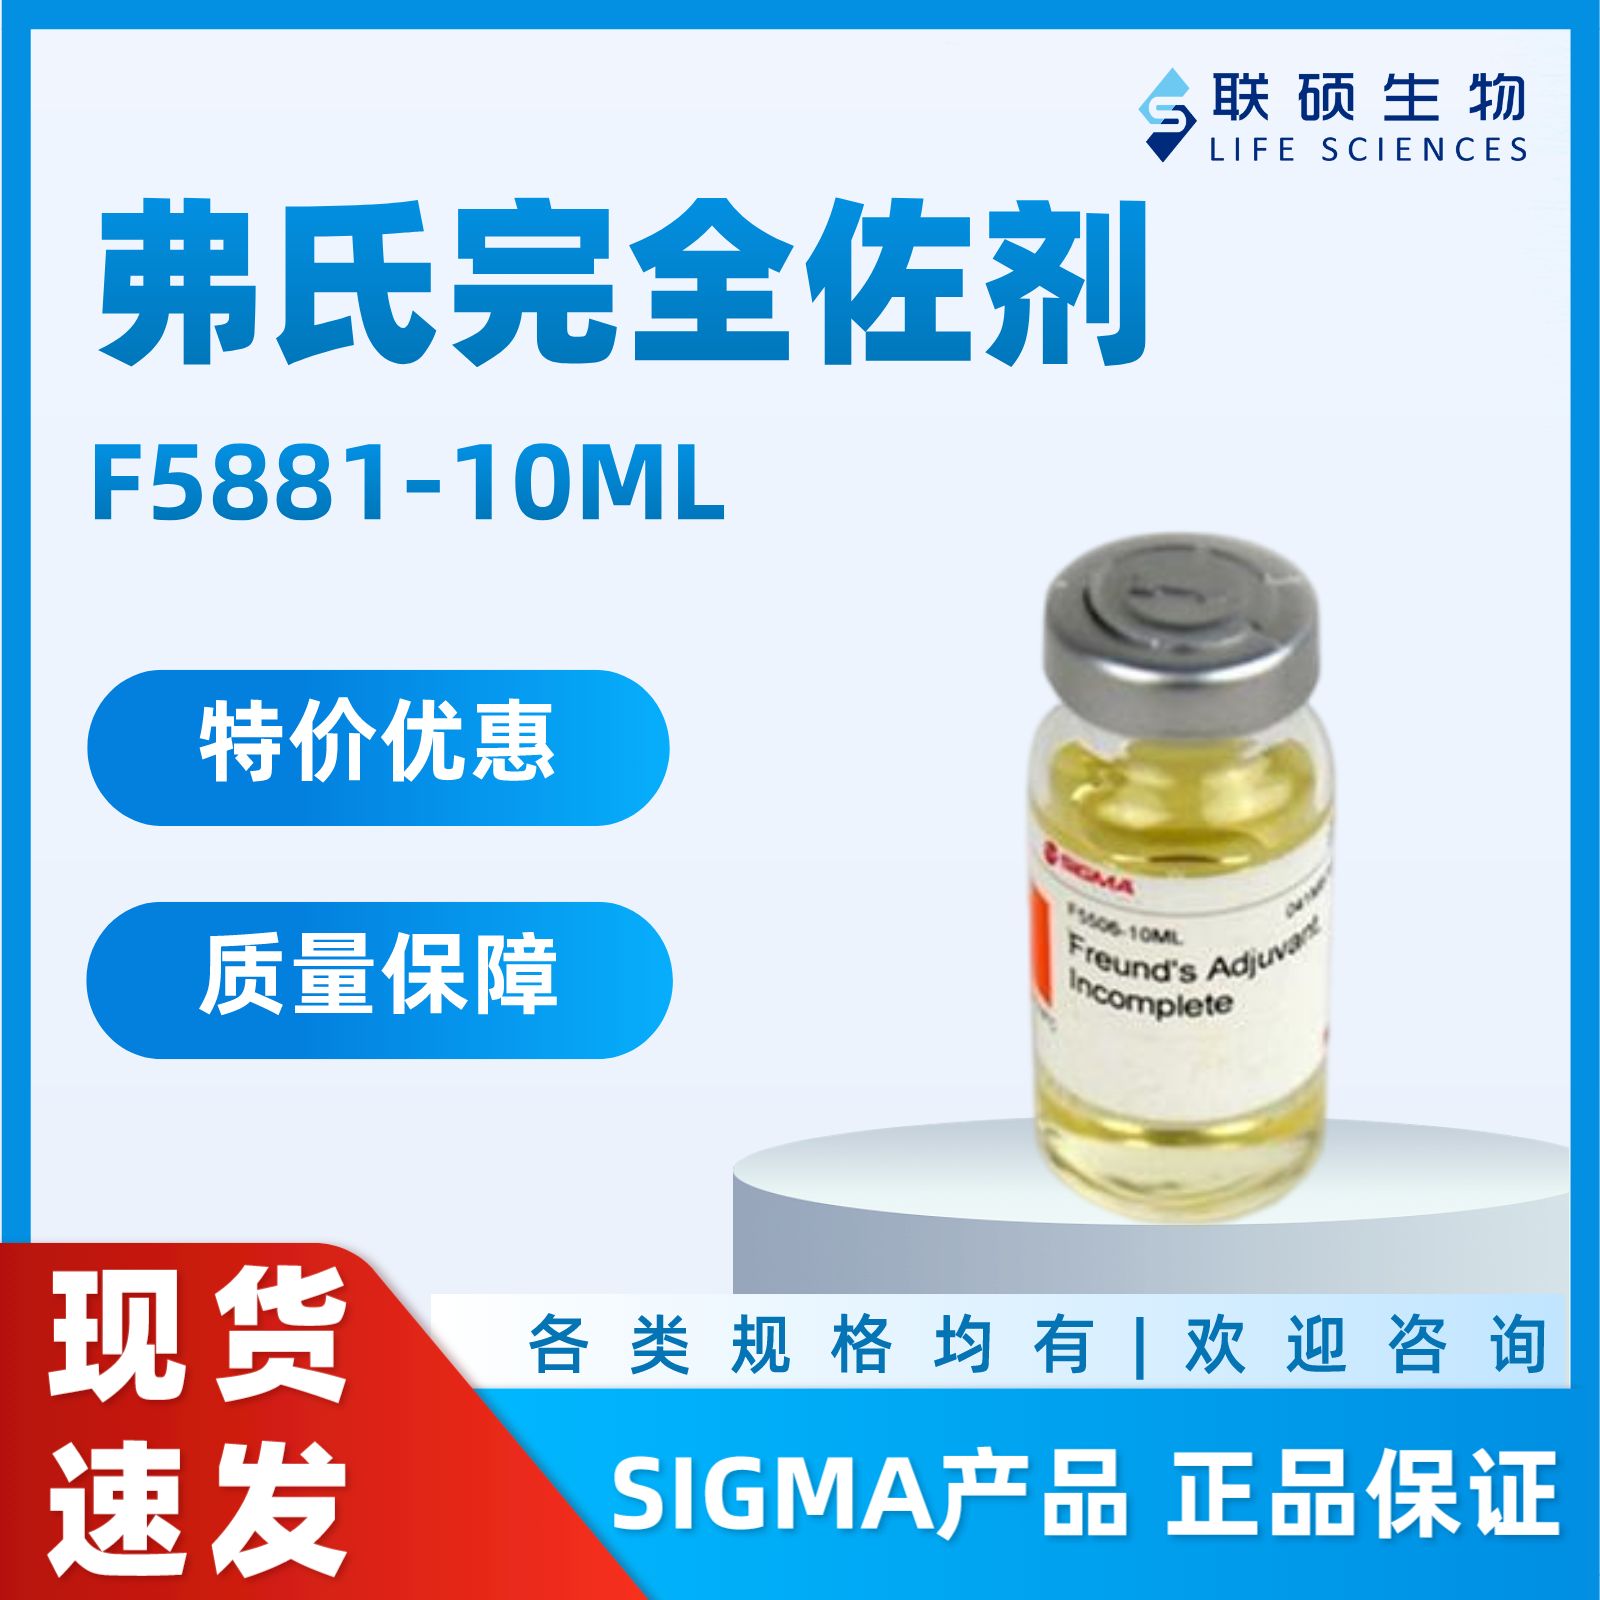 Sigma 弗氏完全佐剂(库存现货) F5881-10ML